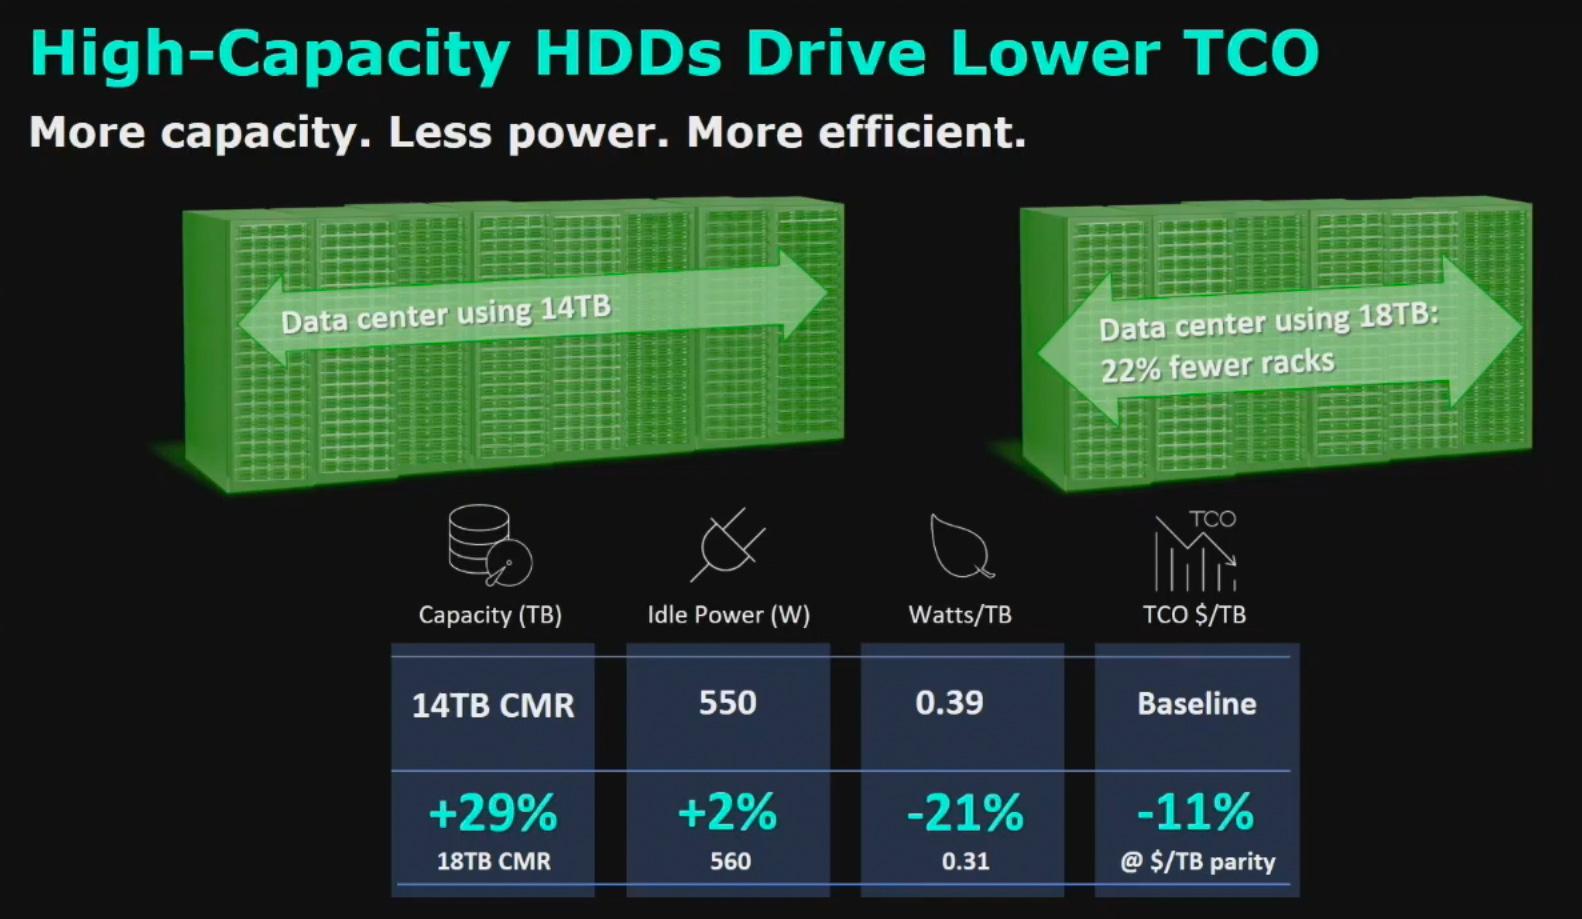 comparaison entre CMR et SMR pour les HDD de datacenter